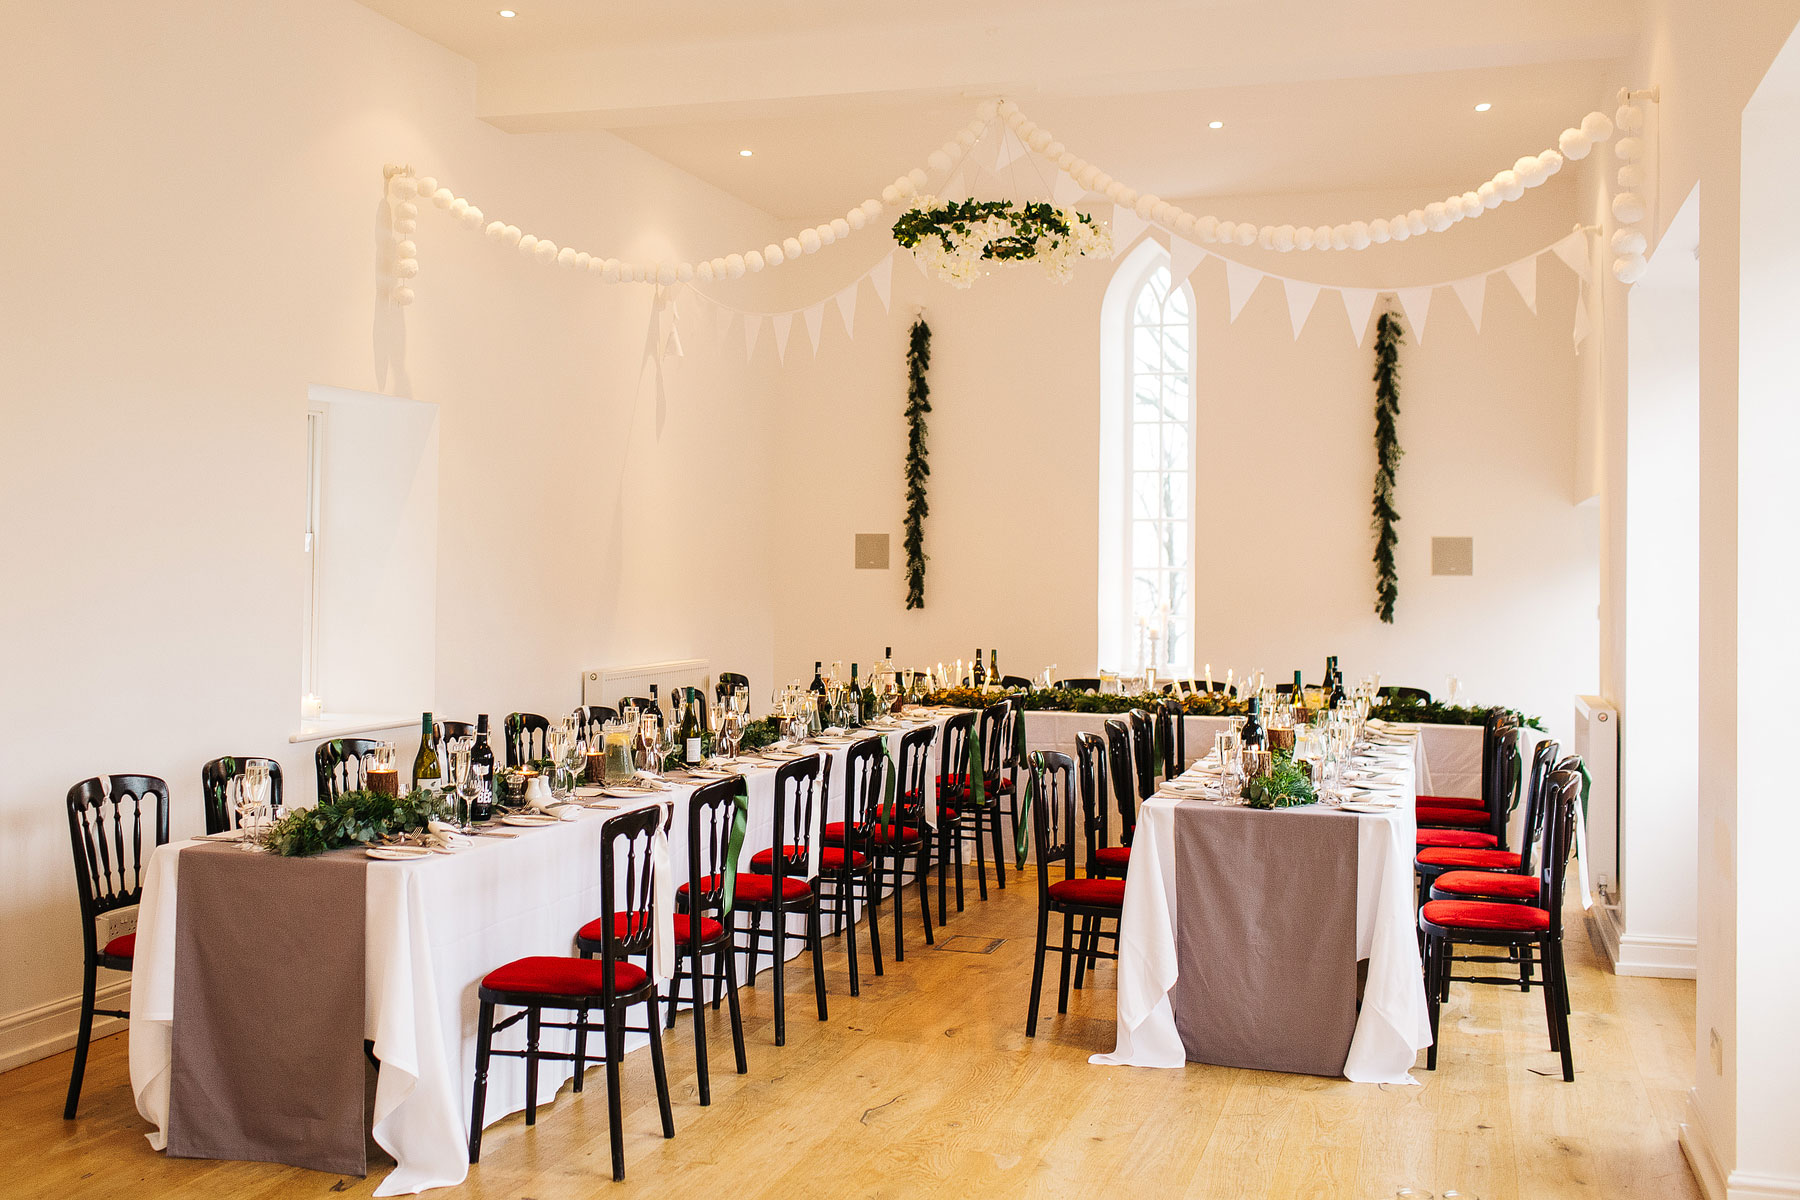 silverholme manor wedding venue set for a small intimate wedding